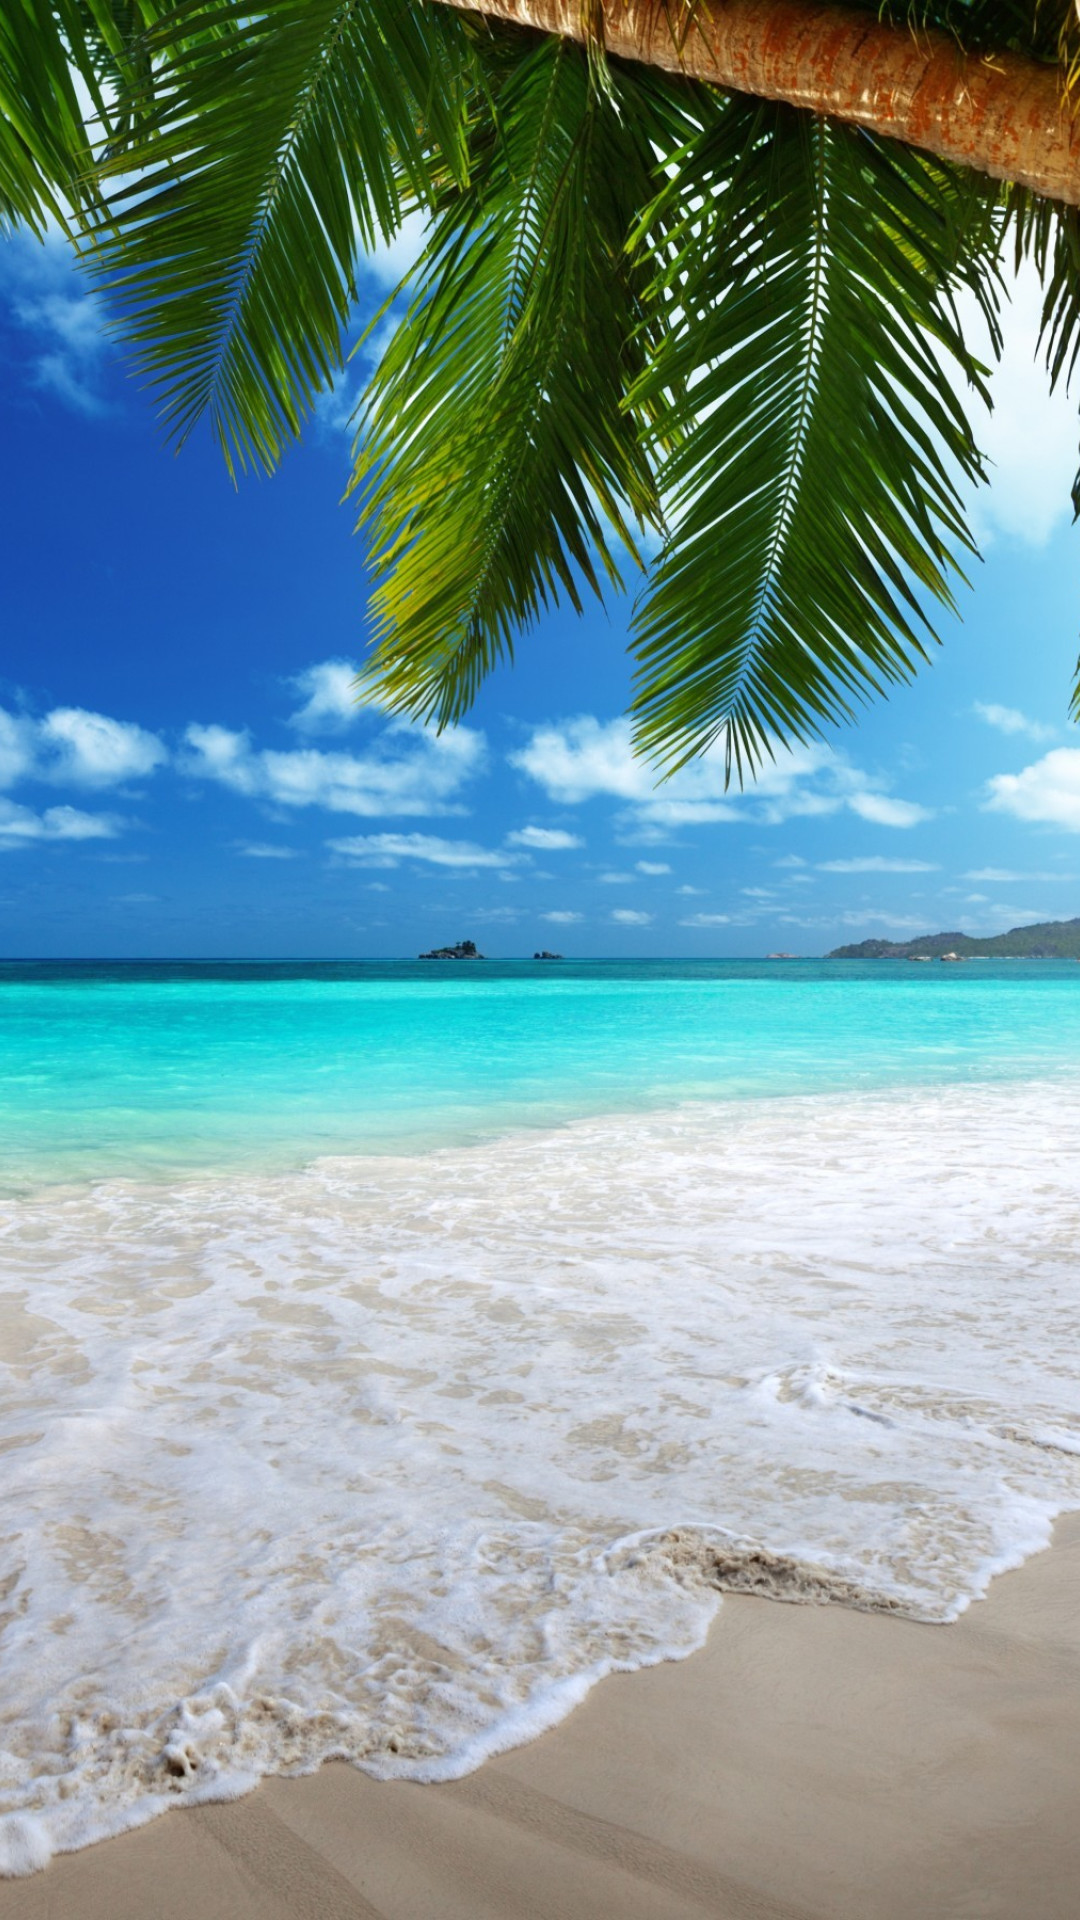 Hãy tải ngay hình nền bãi biển miễn phí cho iPhone của bạn để cảm nhận được tình yêu với biển. Hình nền này sẽ đưa bạn đến với những cánh đồng cát trắng và biển xanh thẳm. Tải ngay để đón Giáng Sinh và Năm Mới với trái tim tràn đầy hạnh phúc! 